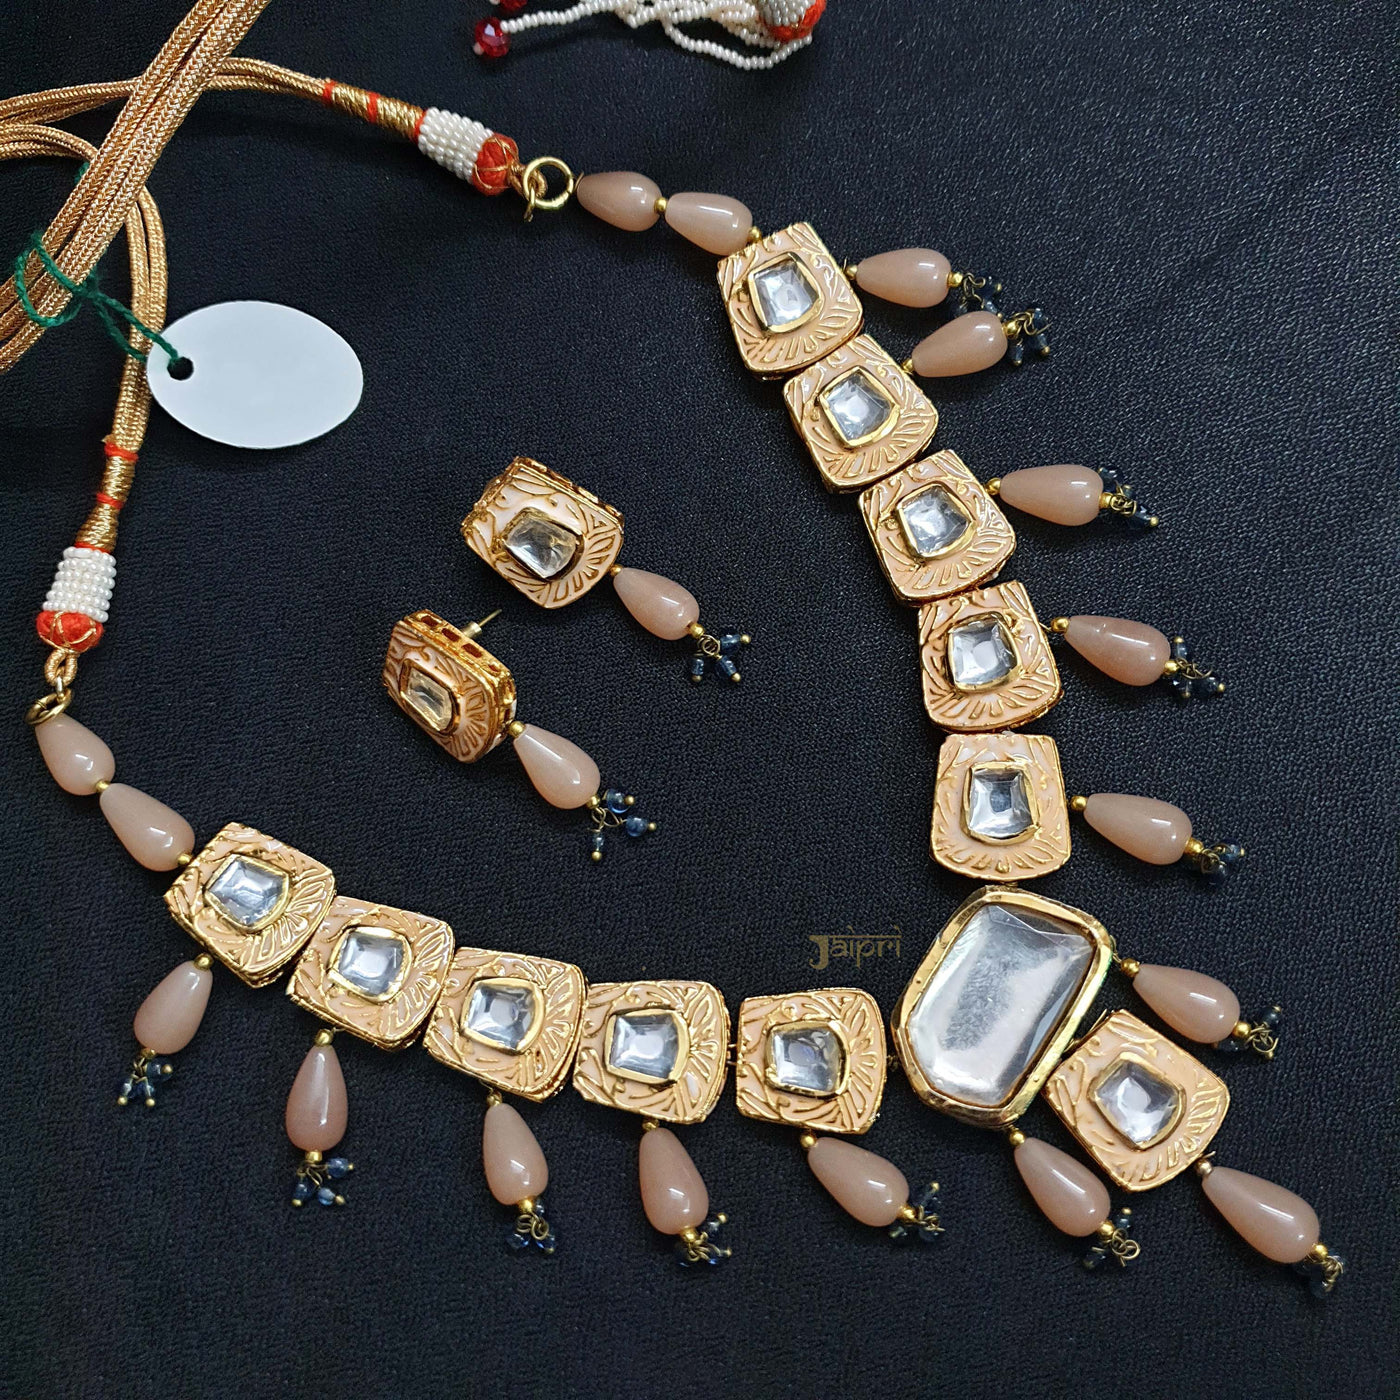 Peach Kundan Meenakari Necklace With Earrings